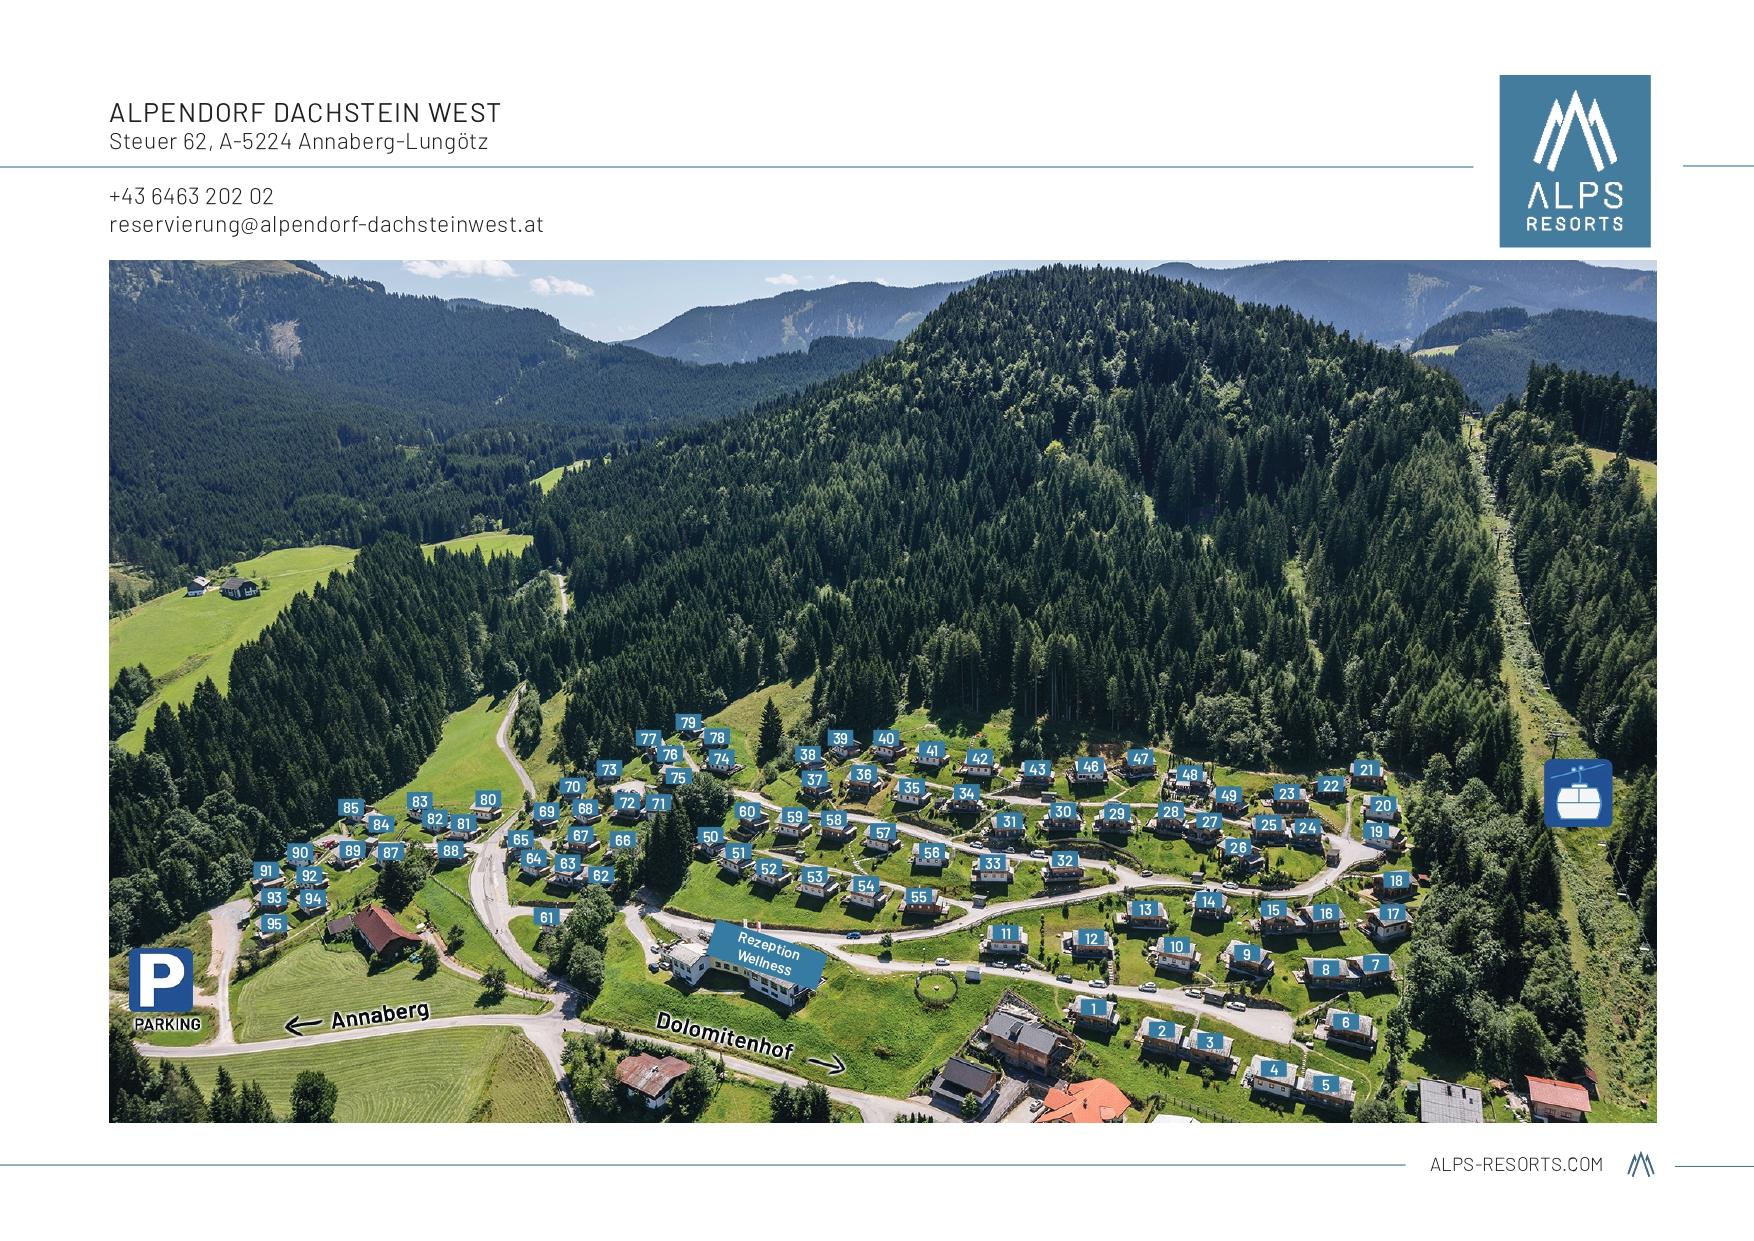 Parkplan Alps Resorts Alpendorf Dachstein West